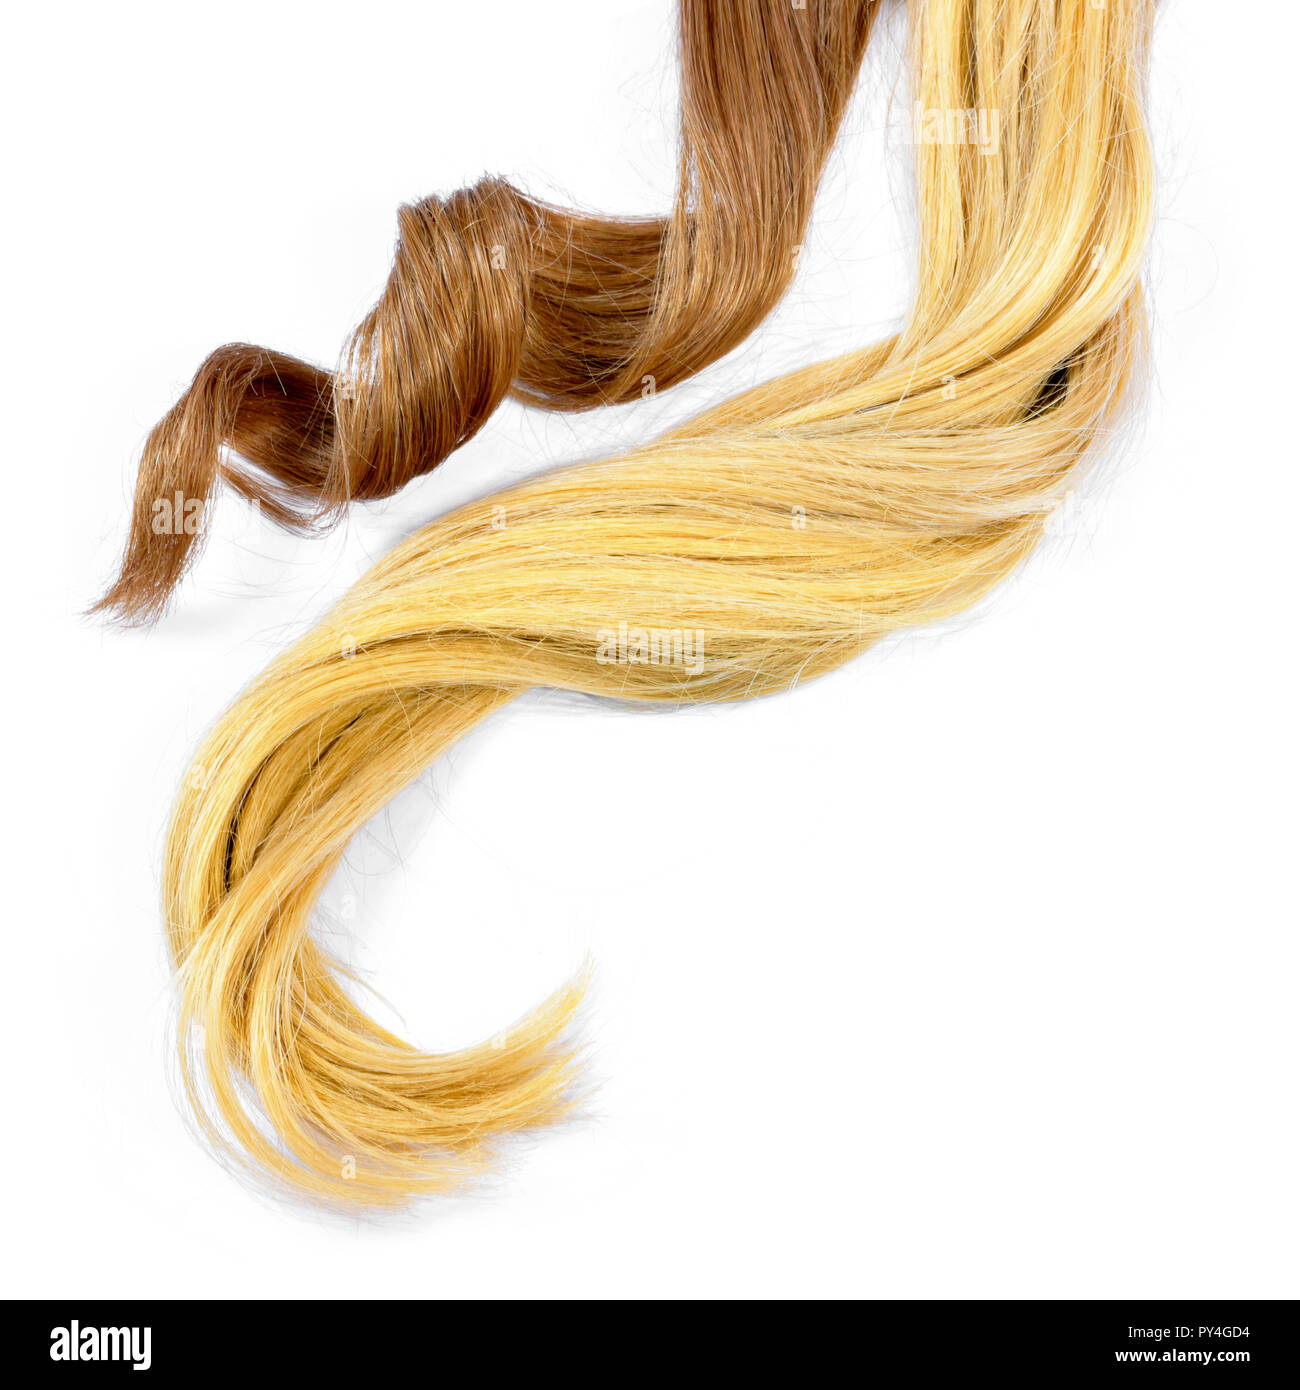 Belle brune et des cheveux blonds tails, isolé sur fond blanc. Brown longue queue et des cheveux blonds et bouclés et les cheveux sains, l'élément de conception ou de cheveux Banque D'Images